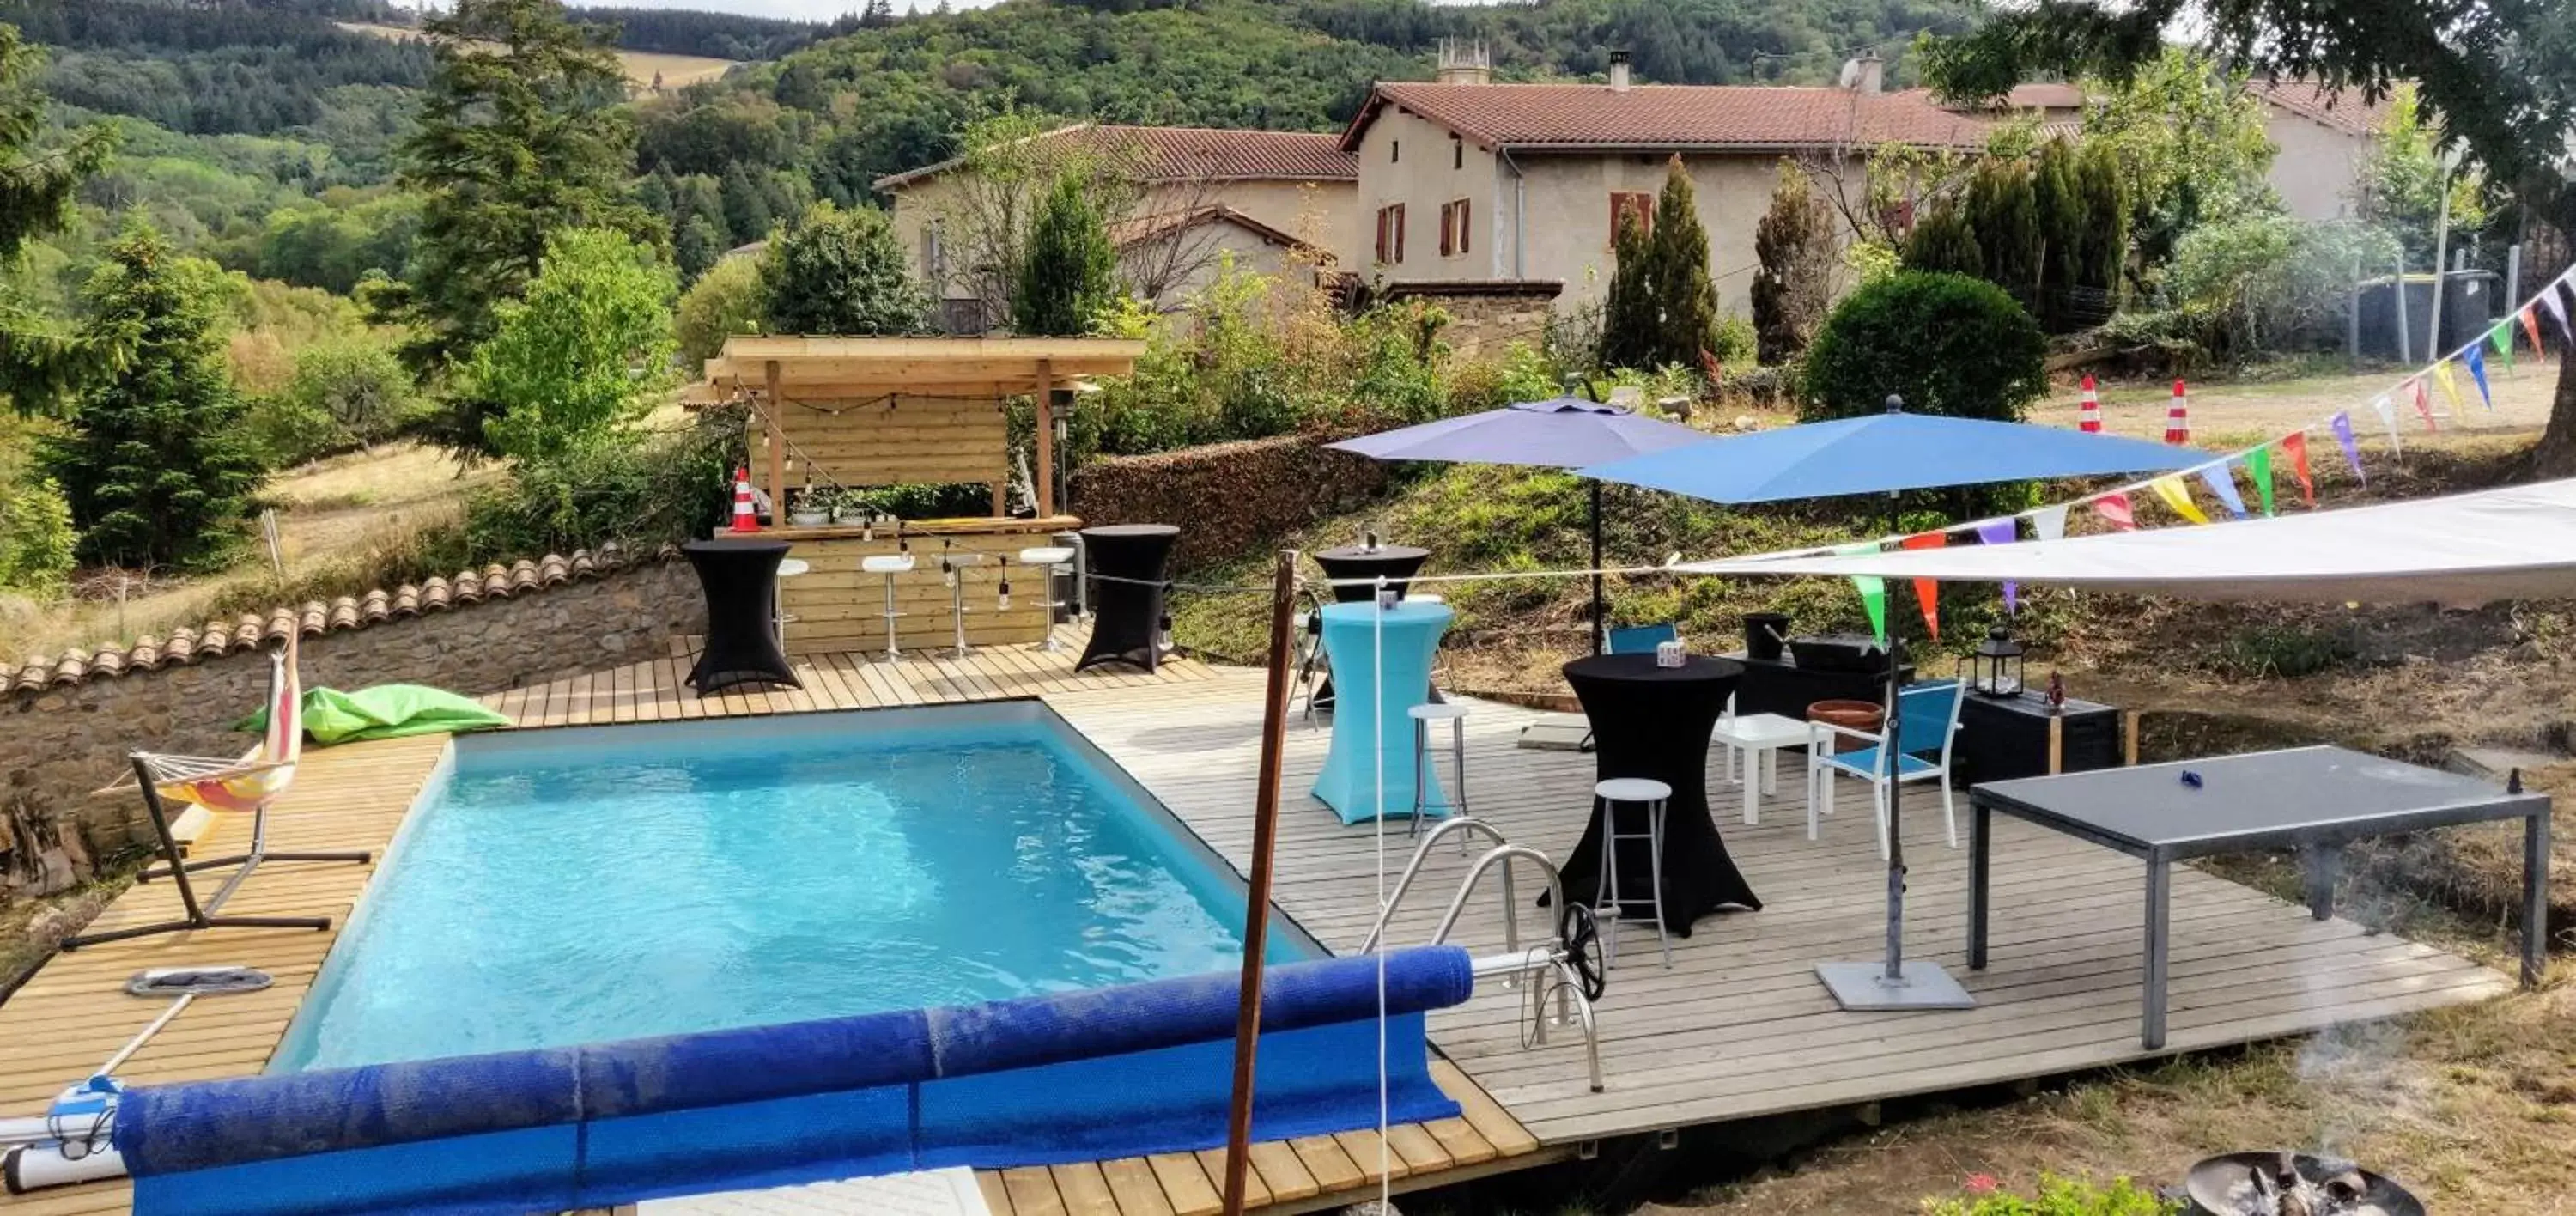 Swimming pool, Pool View in Halte du Vert Coteau